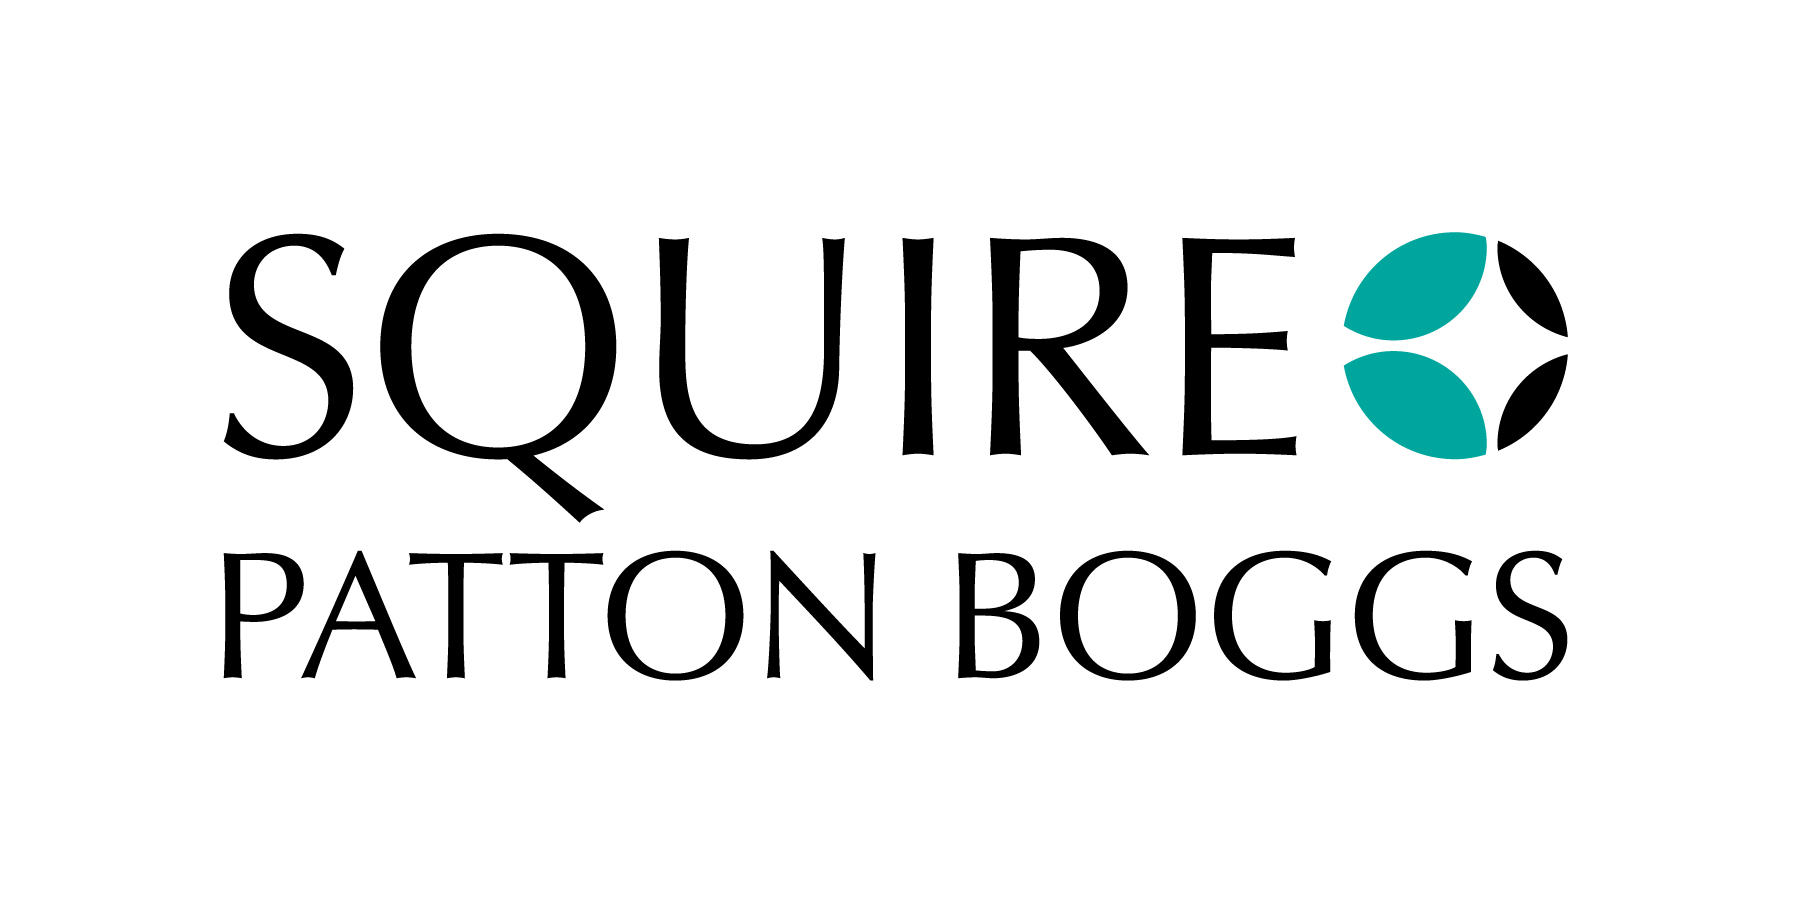 https://growthzonecmsprodeastus.azureedge.net/sites/1803/2019/08/Squire-Patton-Boggs-Logo.jpg